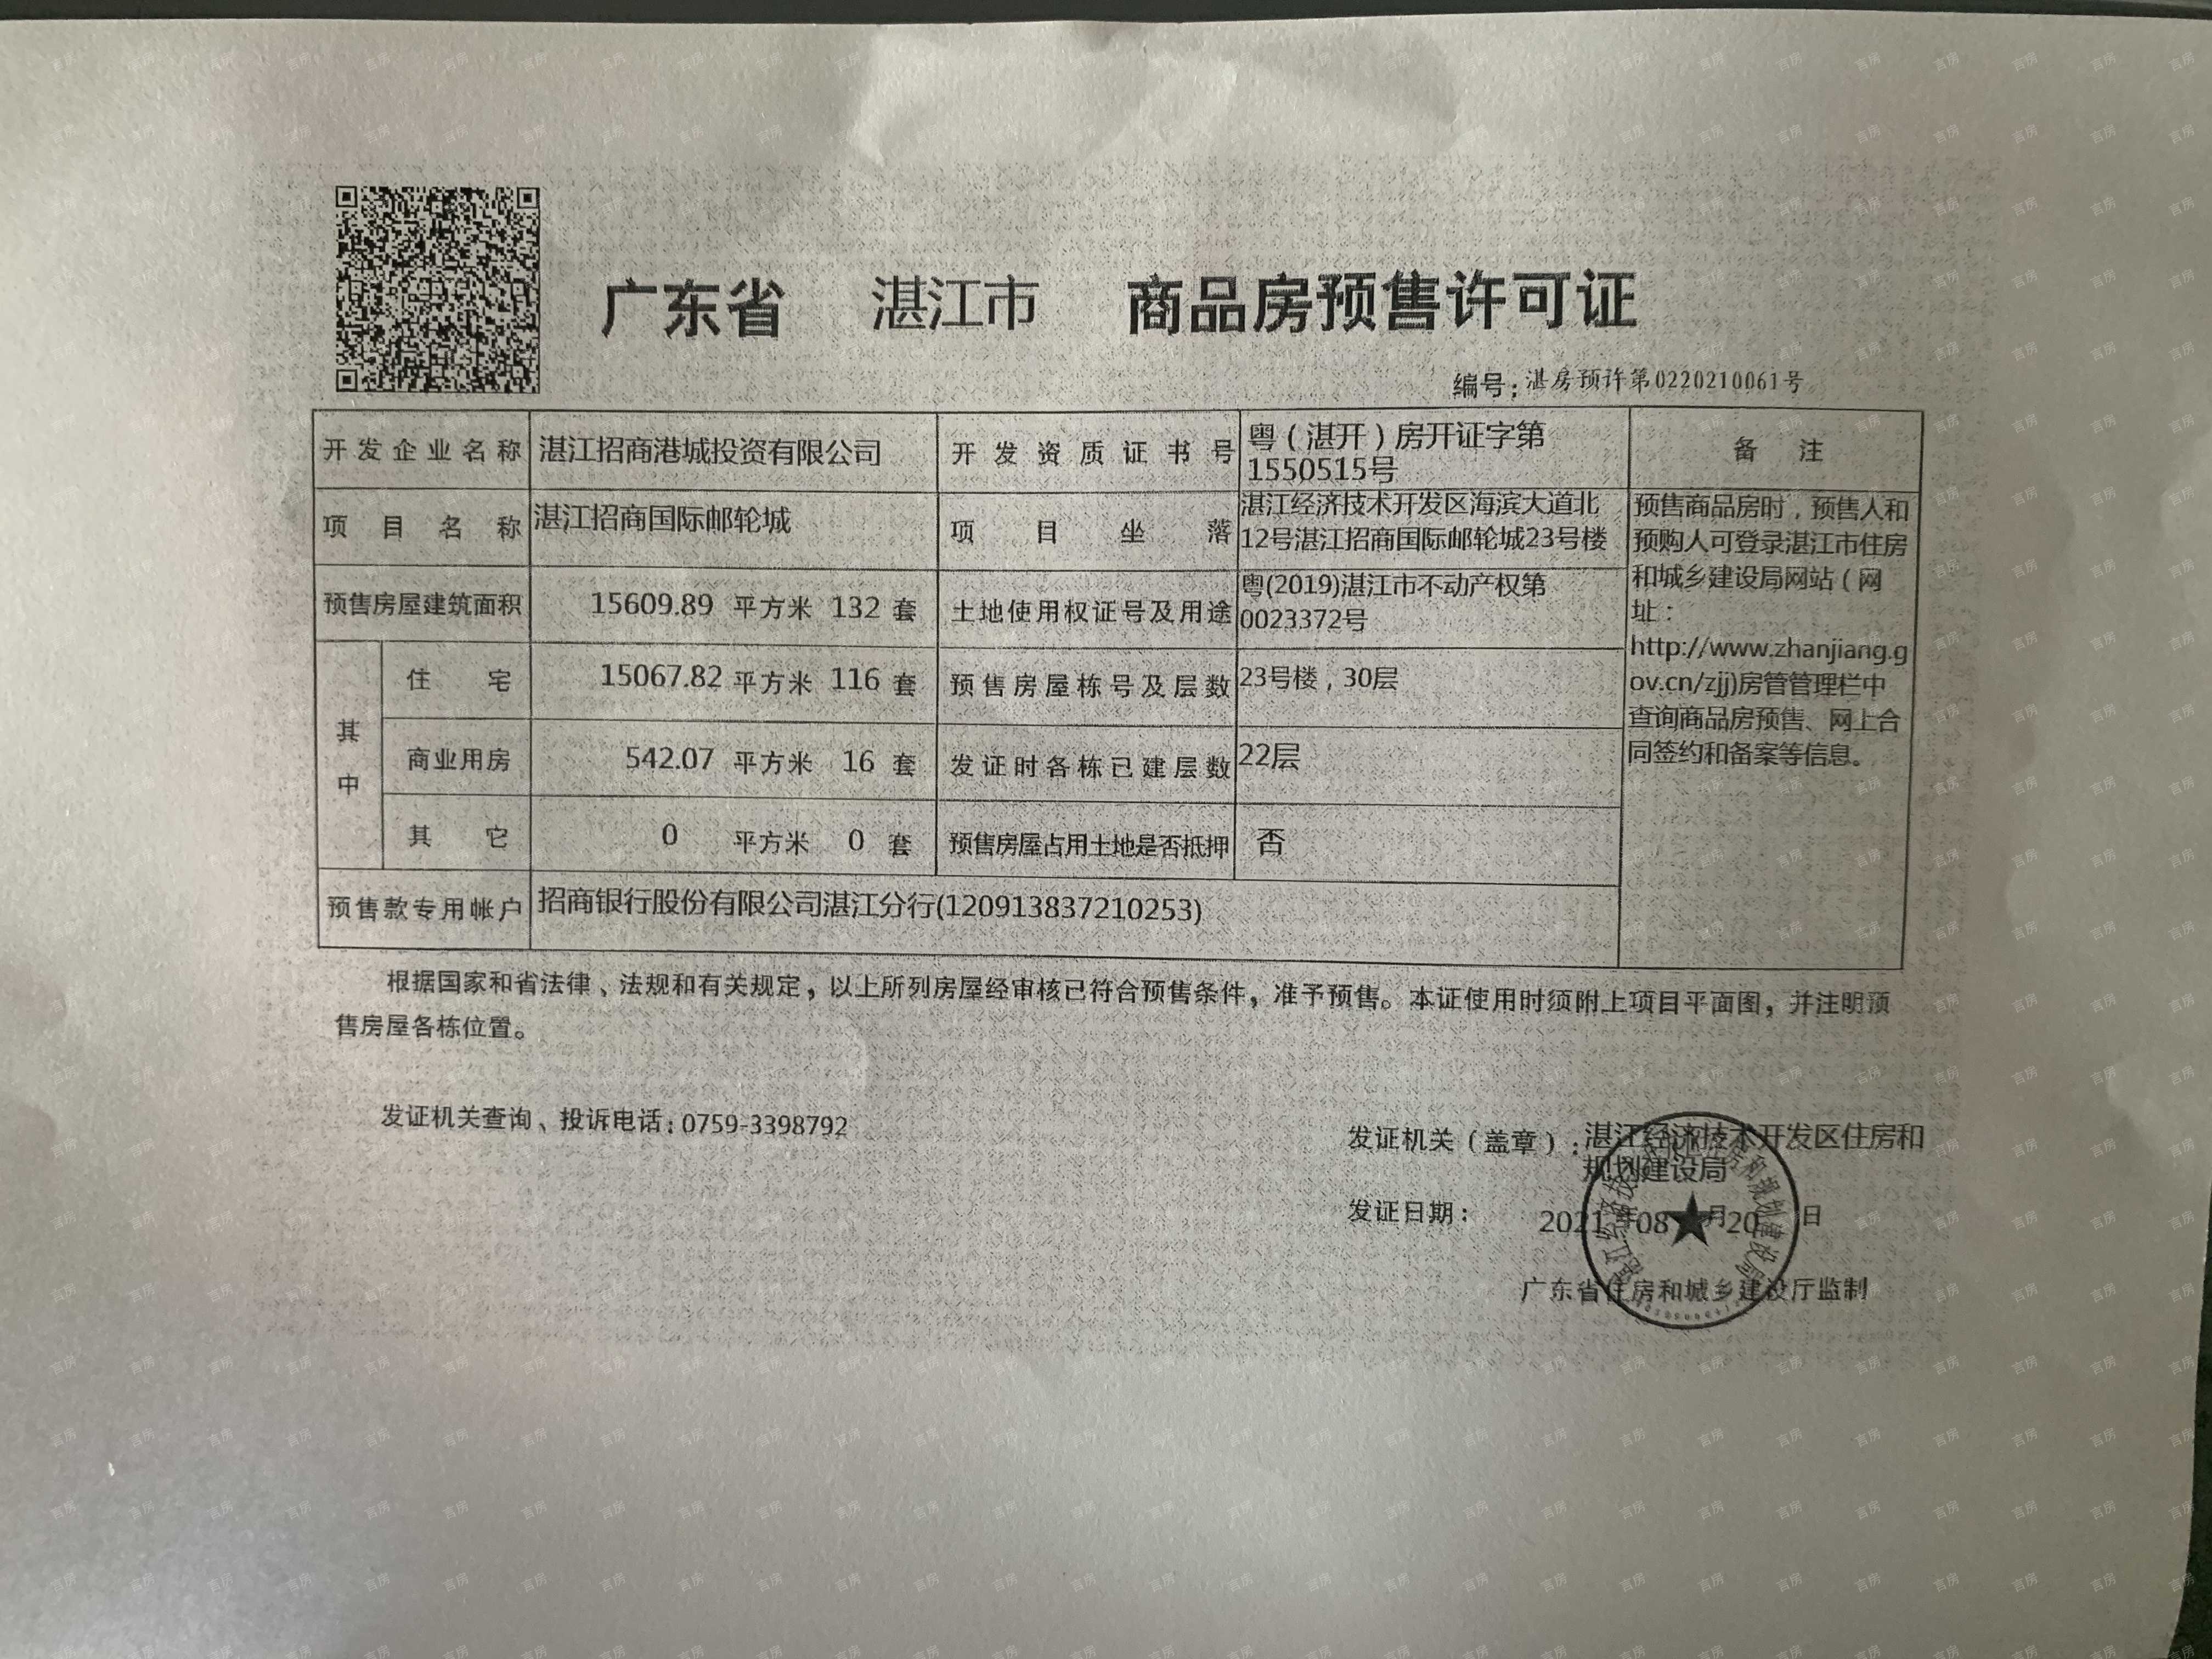 湛江招商国际邮轮城预售许可证